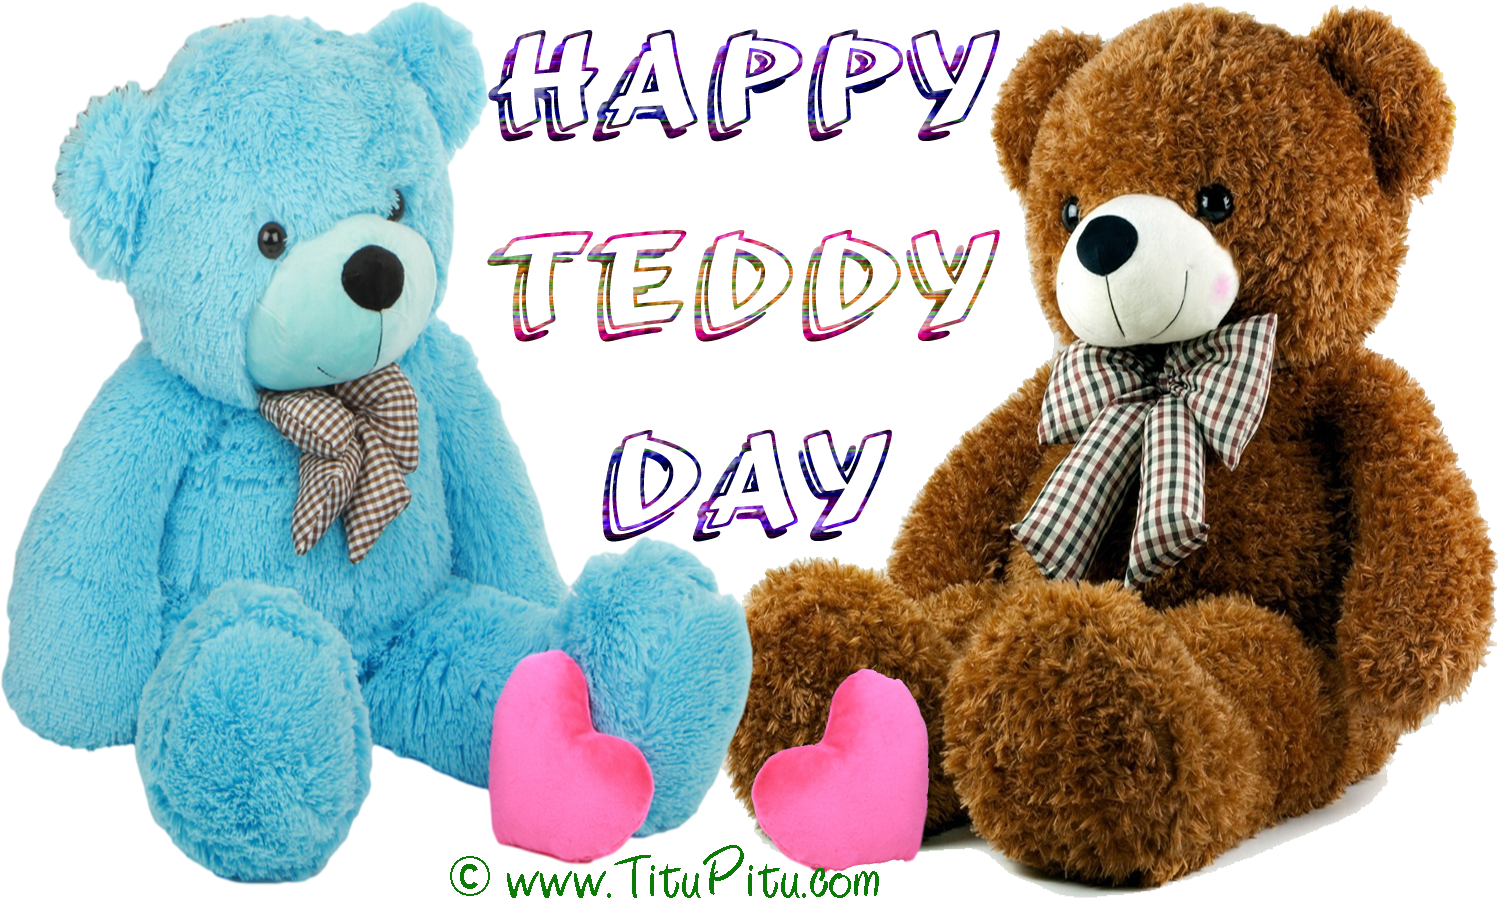 행복한 테디의 날 벽지,봉제 인형,테디 베어,장난감,봉제 인형,곰